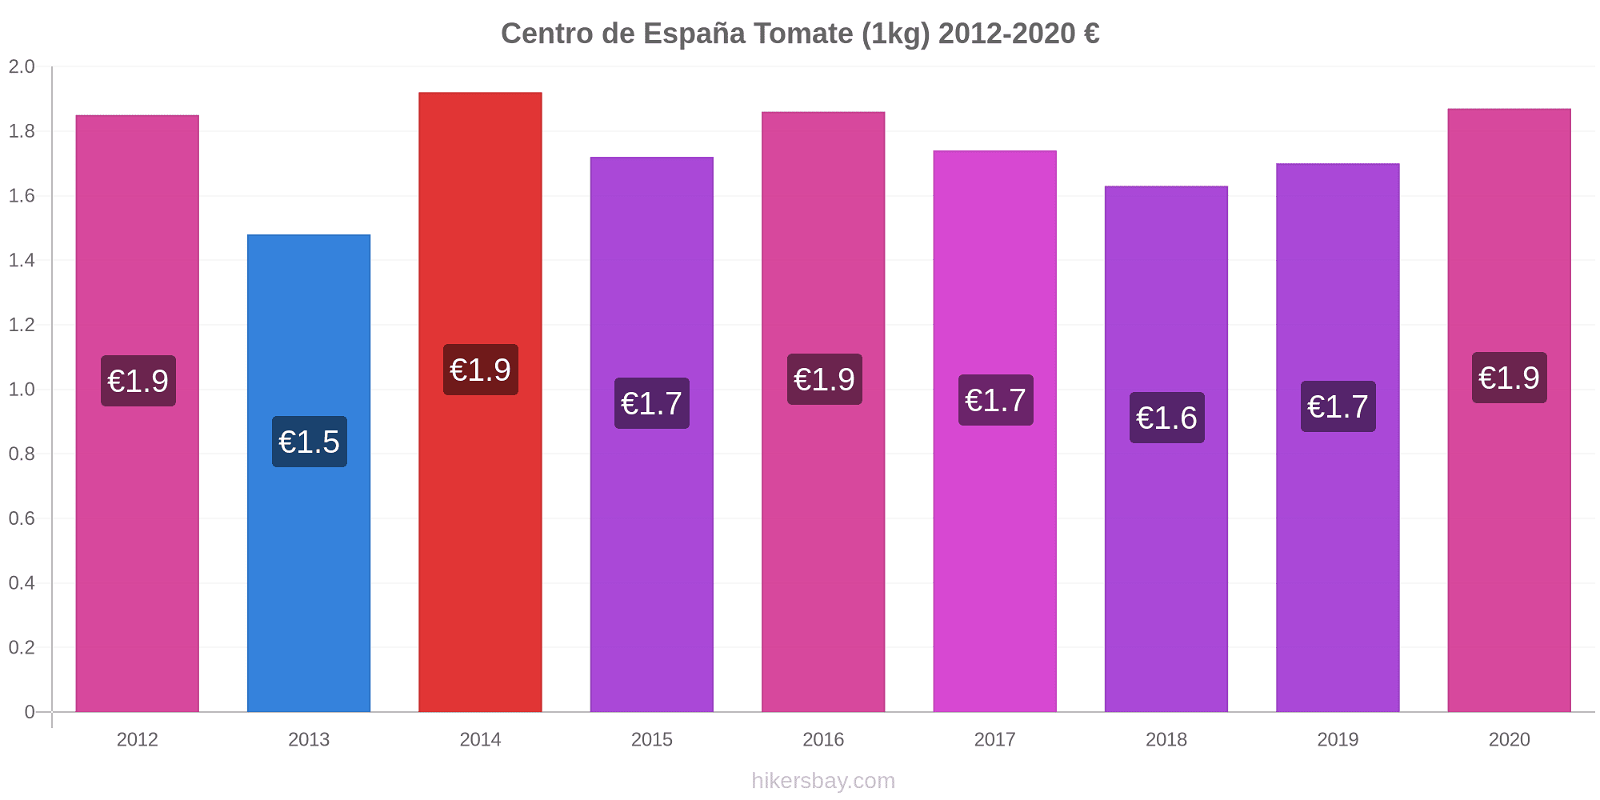 Centro de España cambios de precios Tomate (1kg) hikersbay.com